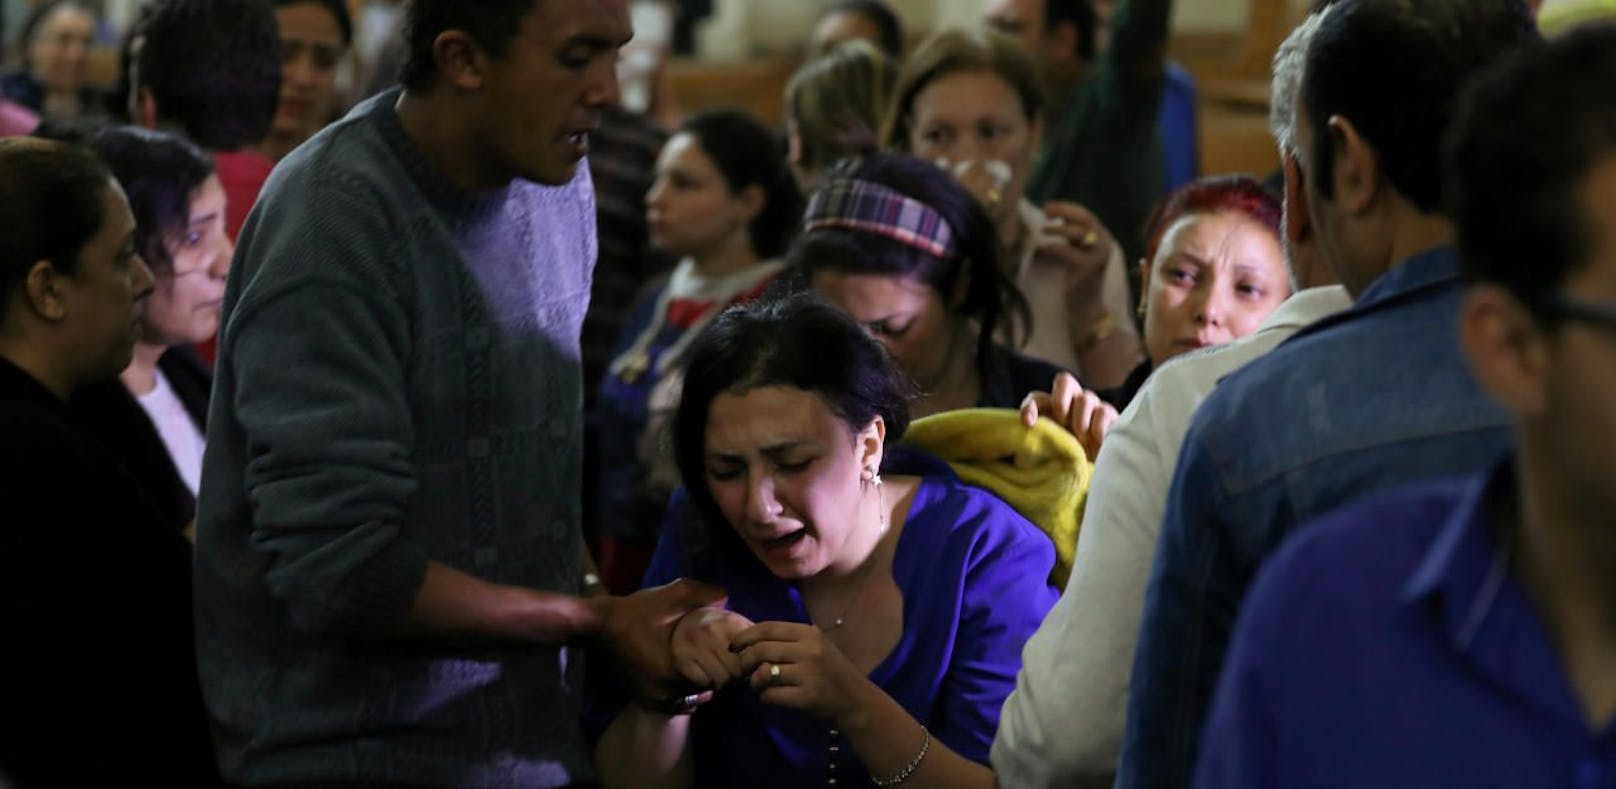 Kirchgänger trauern um bei einem Bombenanschlag getötete Menschen am Palmsonntag in Ägypten.